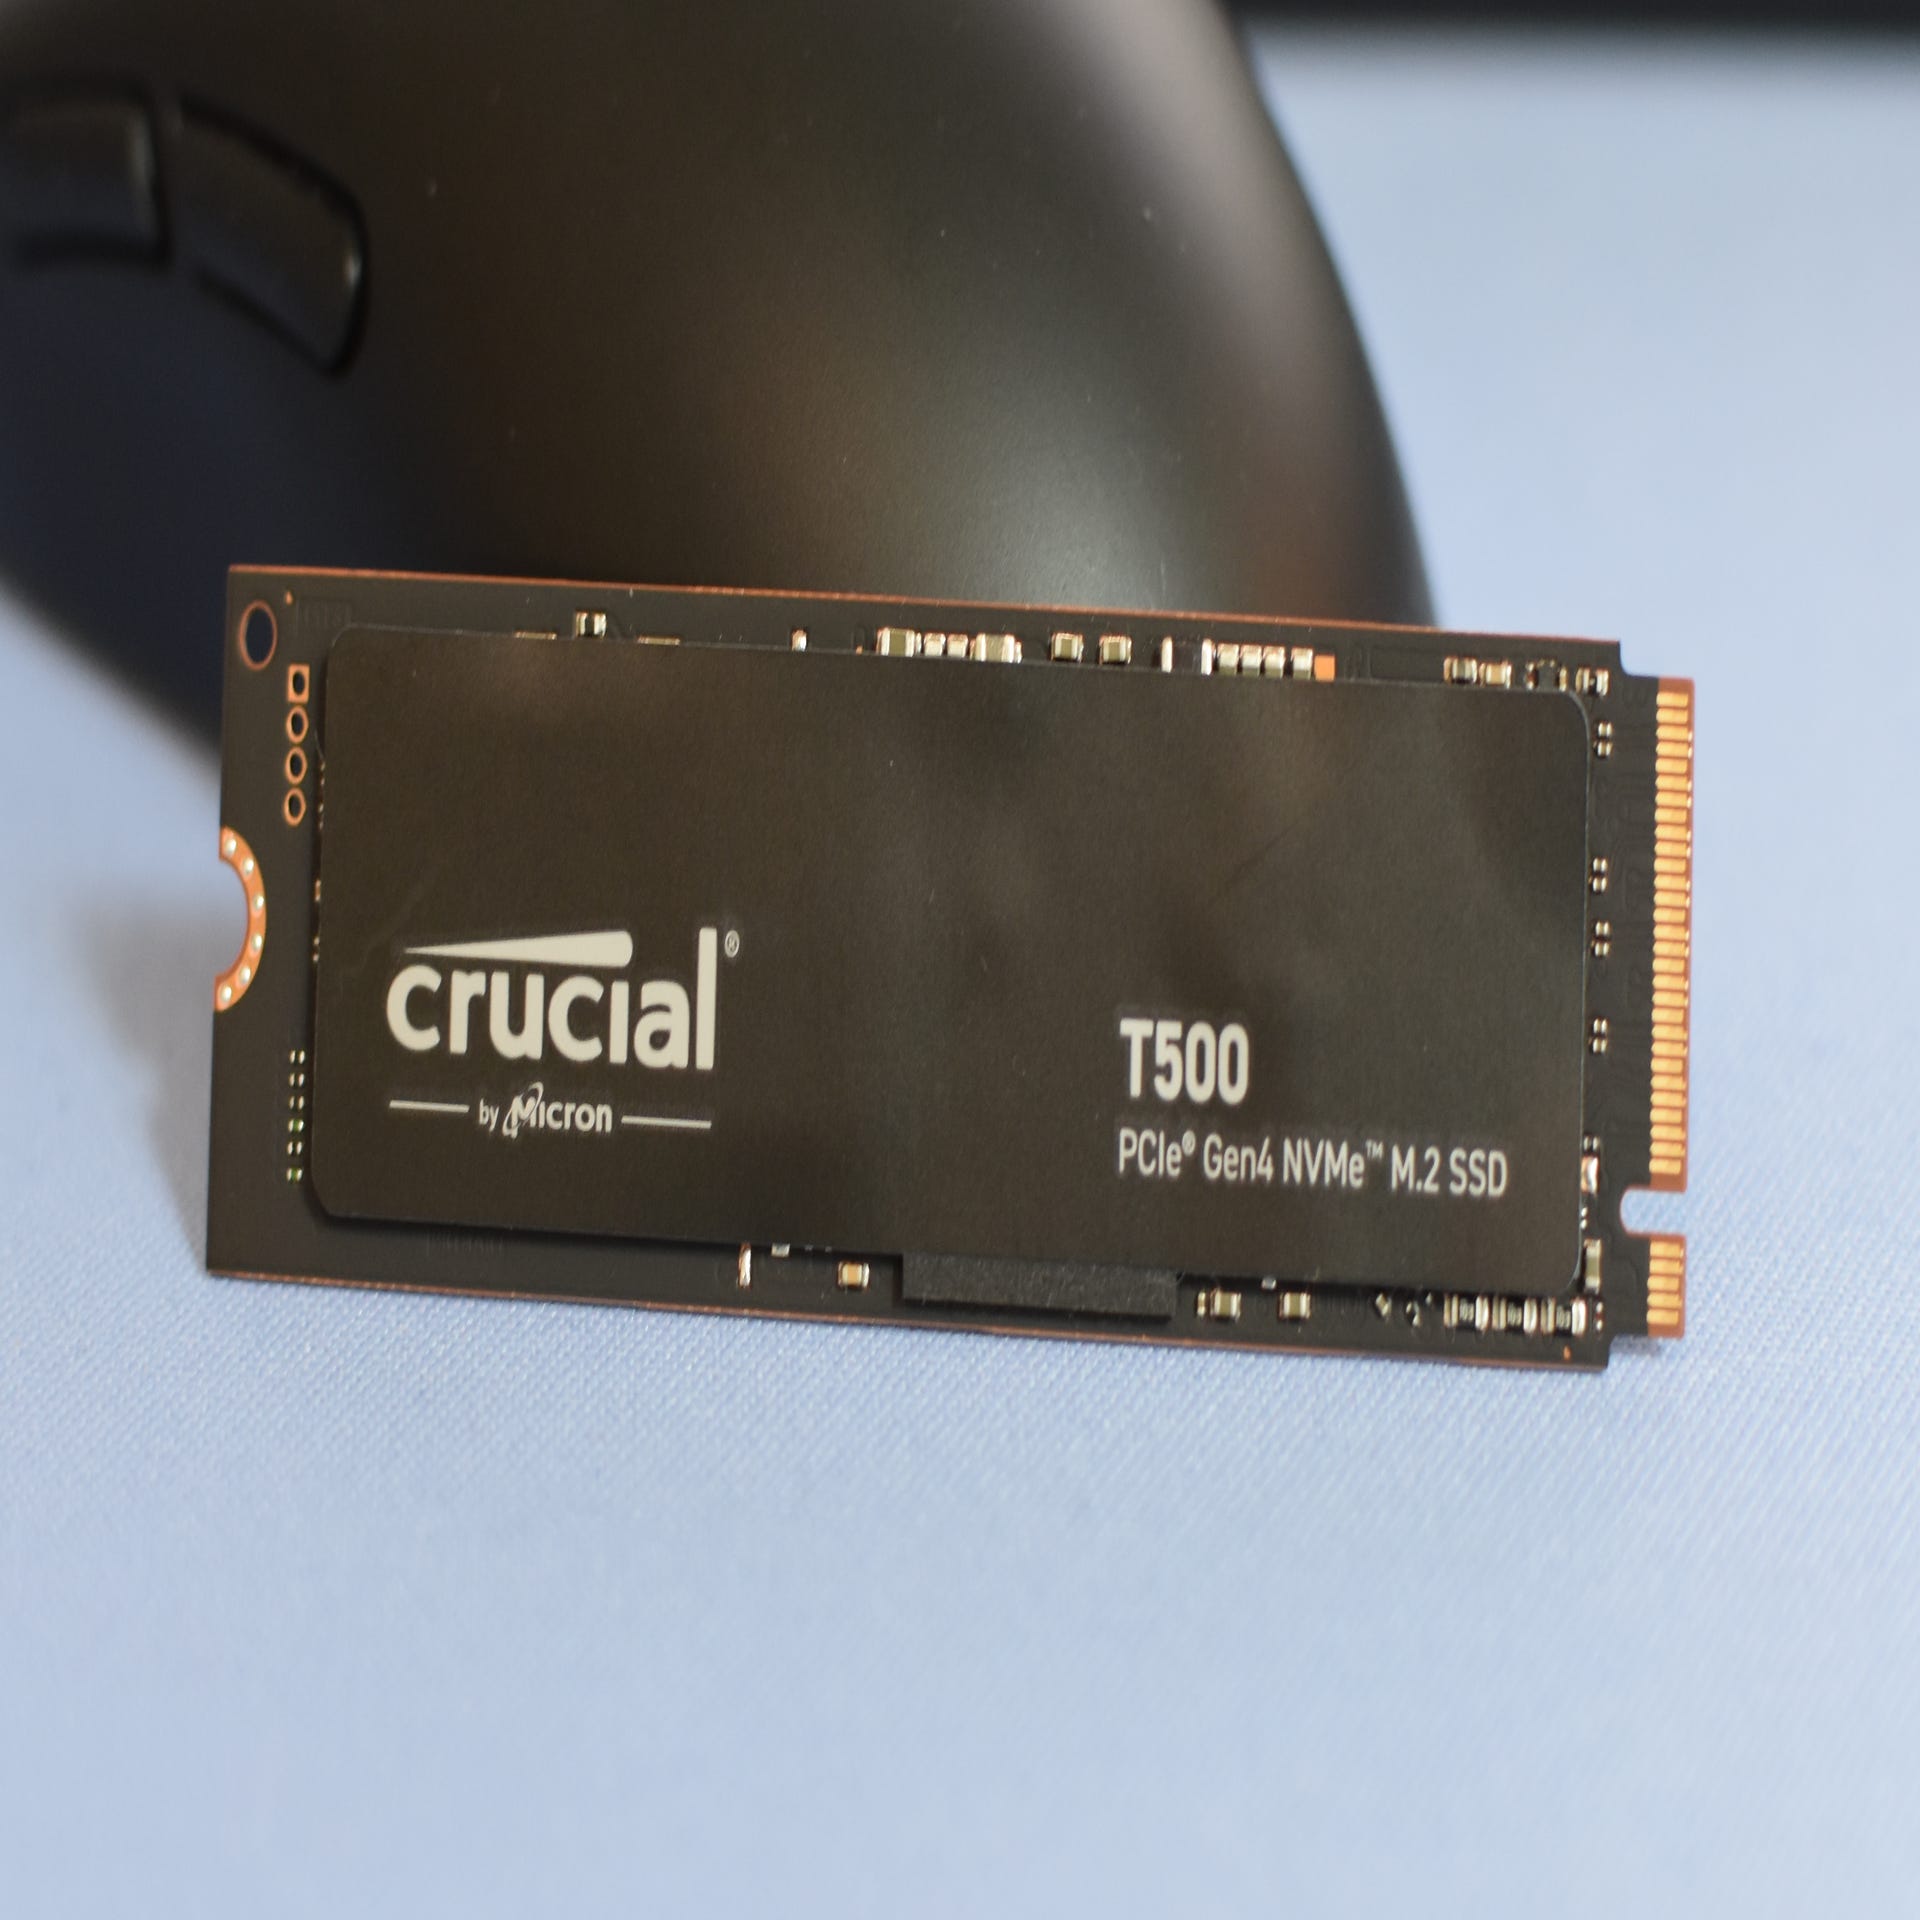 AMD's Ryzen 7 5800X is an even better value gaming CPU than the legendary  5800X3D